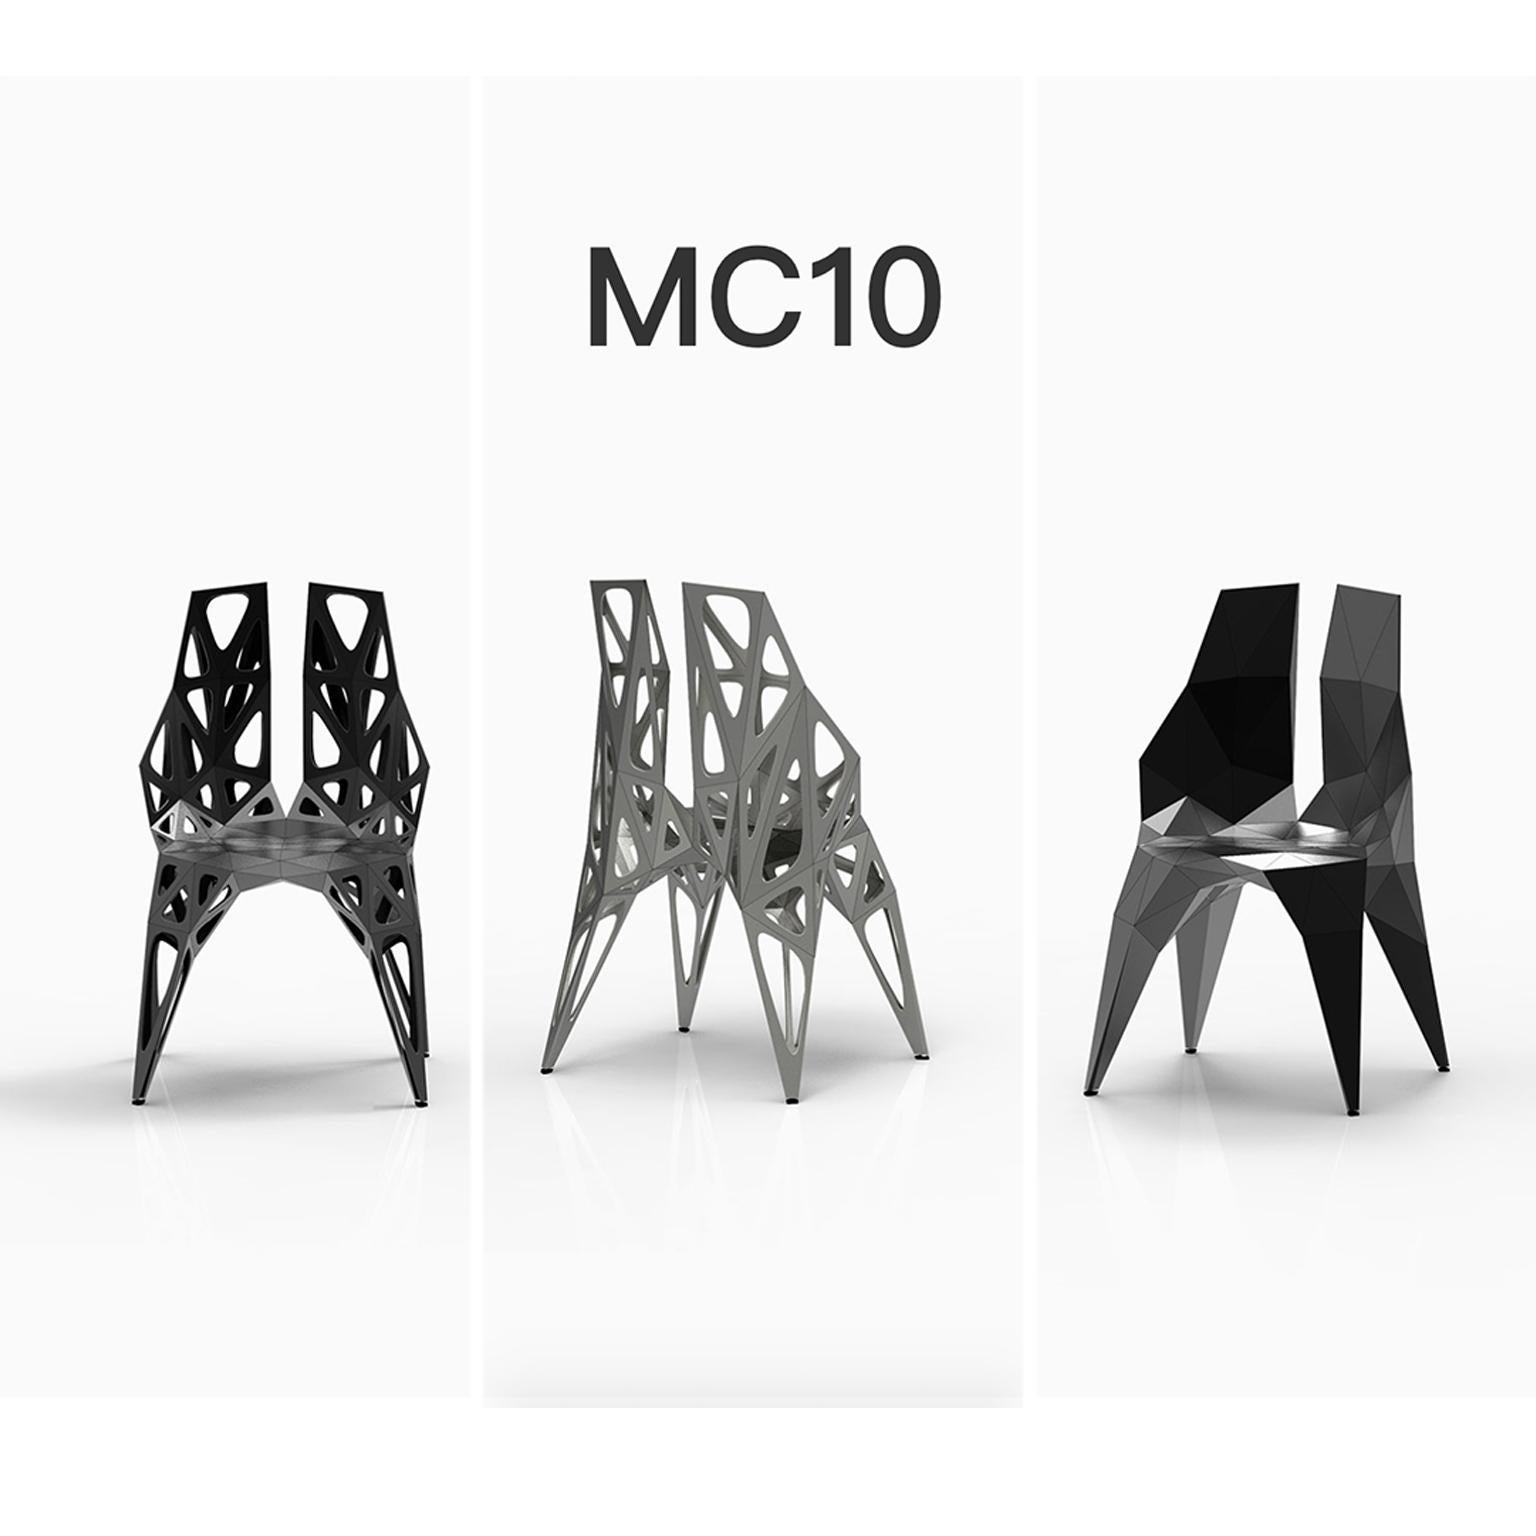 Draußen und drinnen
4 offizielle Stuhltypen / verfügbar
solide
punkte
rahmen
2 Farben offiziell / verfügbar / Ausführung in poliert/matt
schwarz
silber

Der Möbeldesigner Zhoujie Zhang ist bekannt für die Integration von automatisiertem